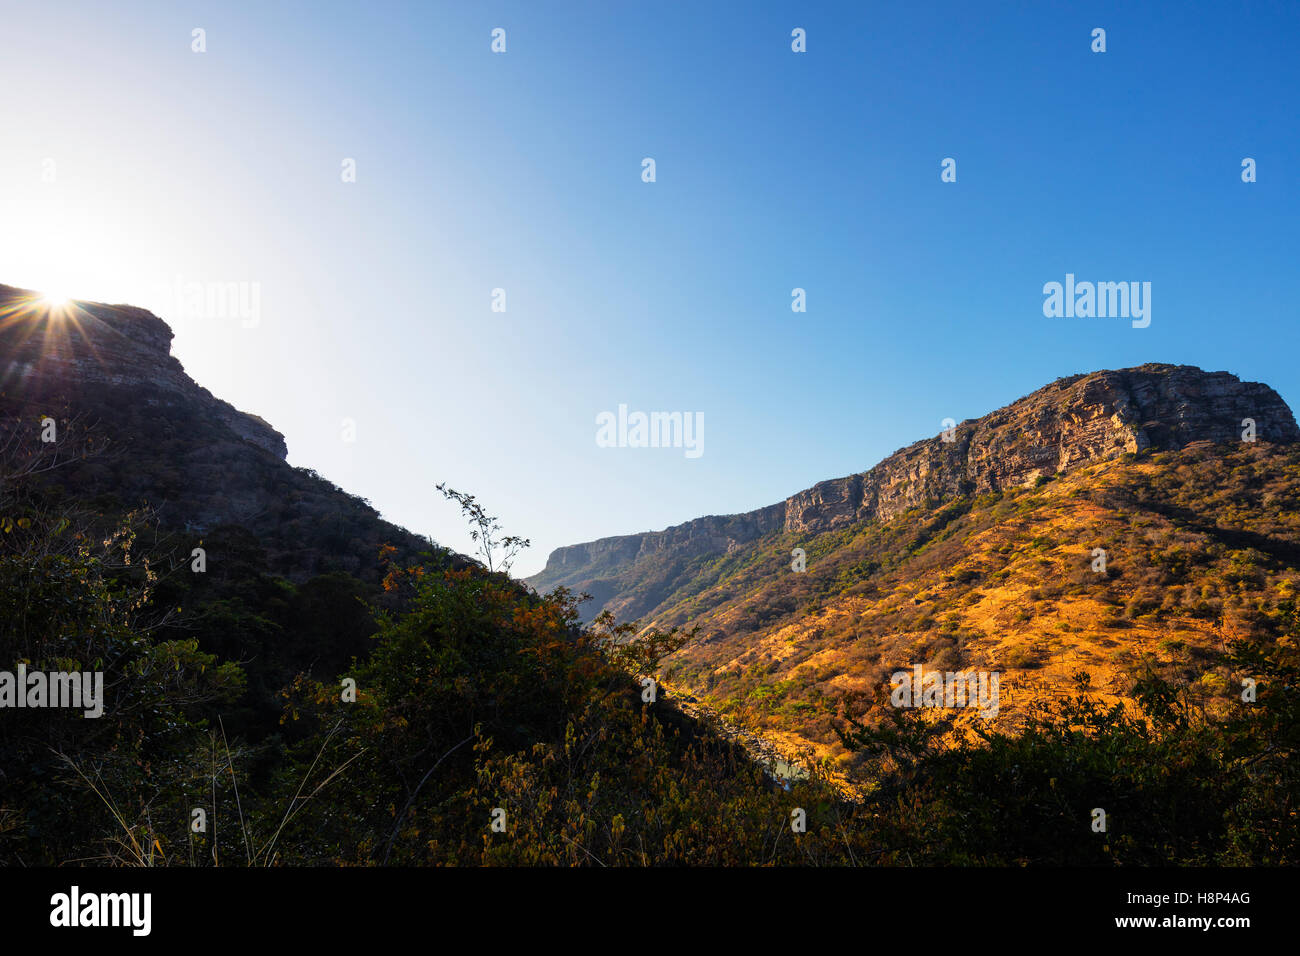 South Africa, Kwazulu-Natal, Oribi Gorge, sunrise Stock Photo